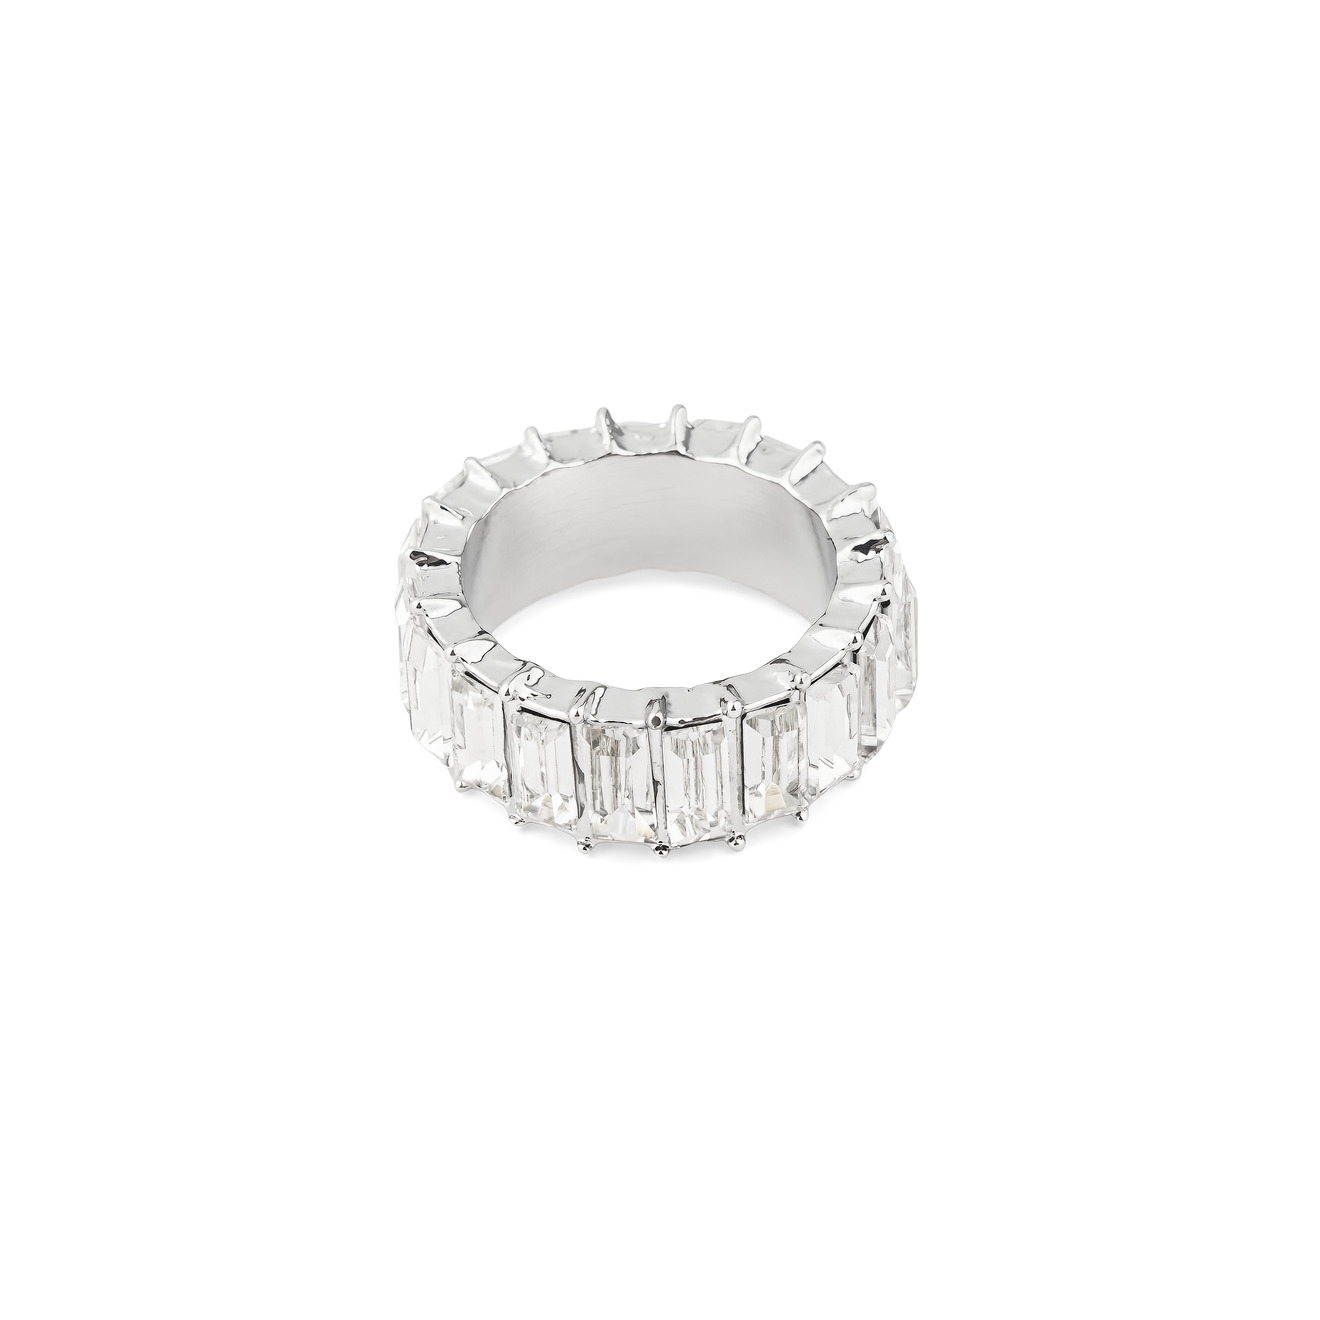 Herald Percy Серебристое кольцо с белыми кристаллами herald percy серебристое кольцо из сердец с белыми и зелеными кристаллами